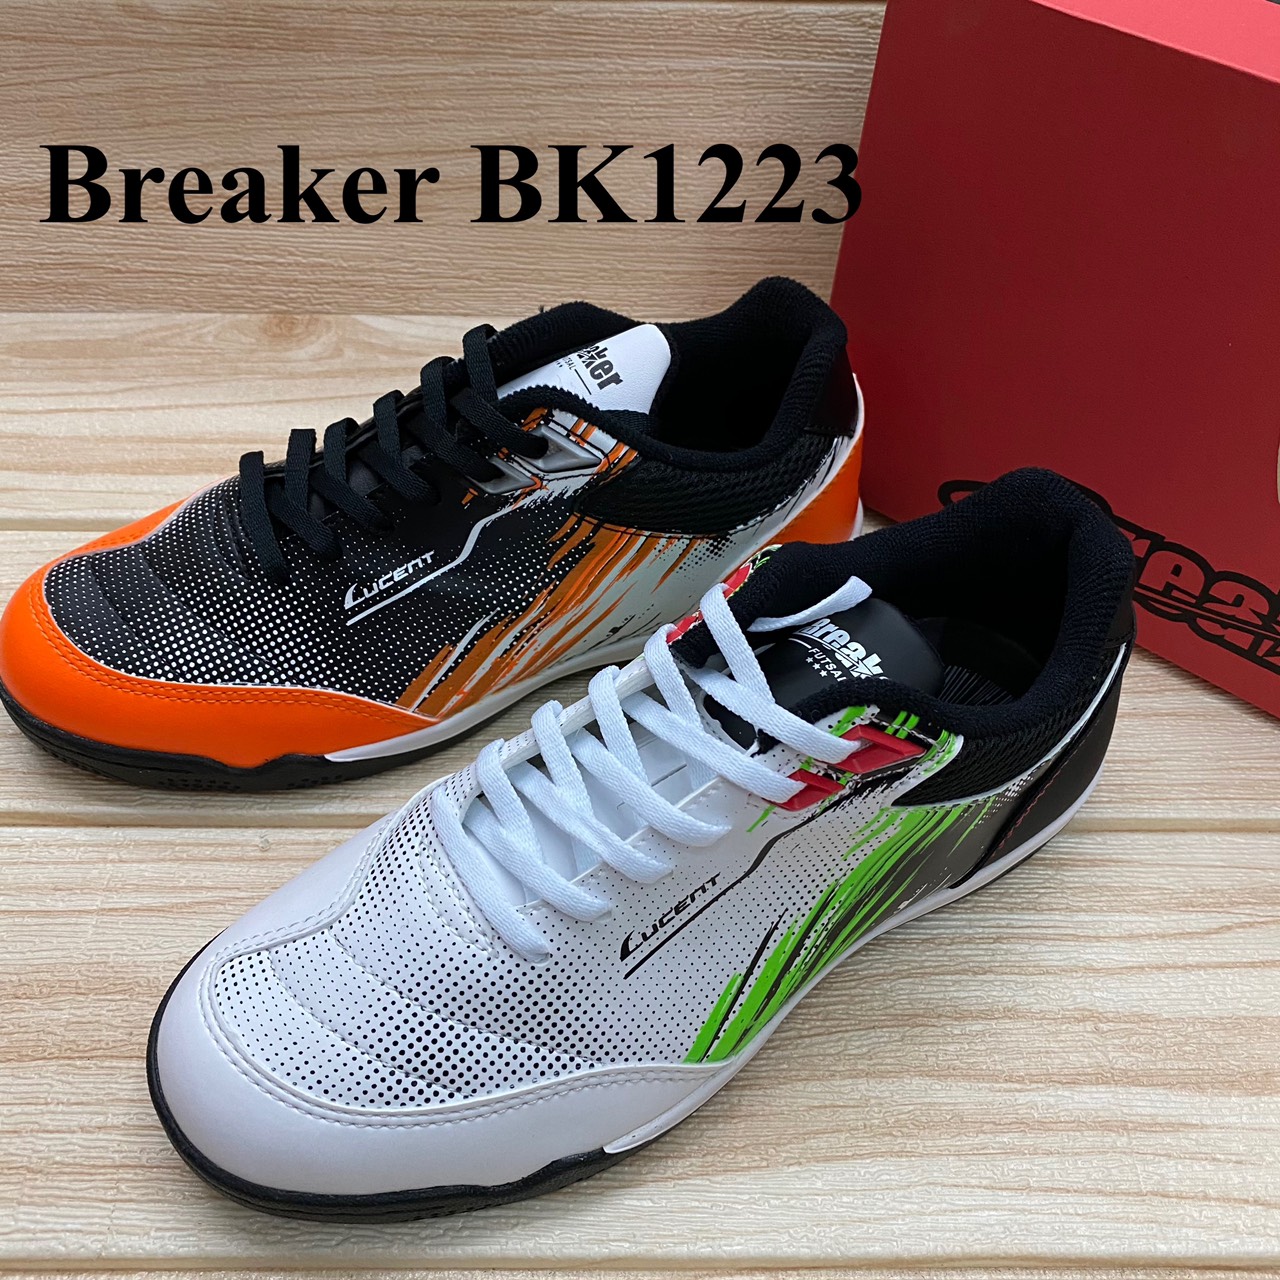 รองเท้าฟุตซอล Breaker BK 1223 (37-45) สีดำ/สีขาว